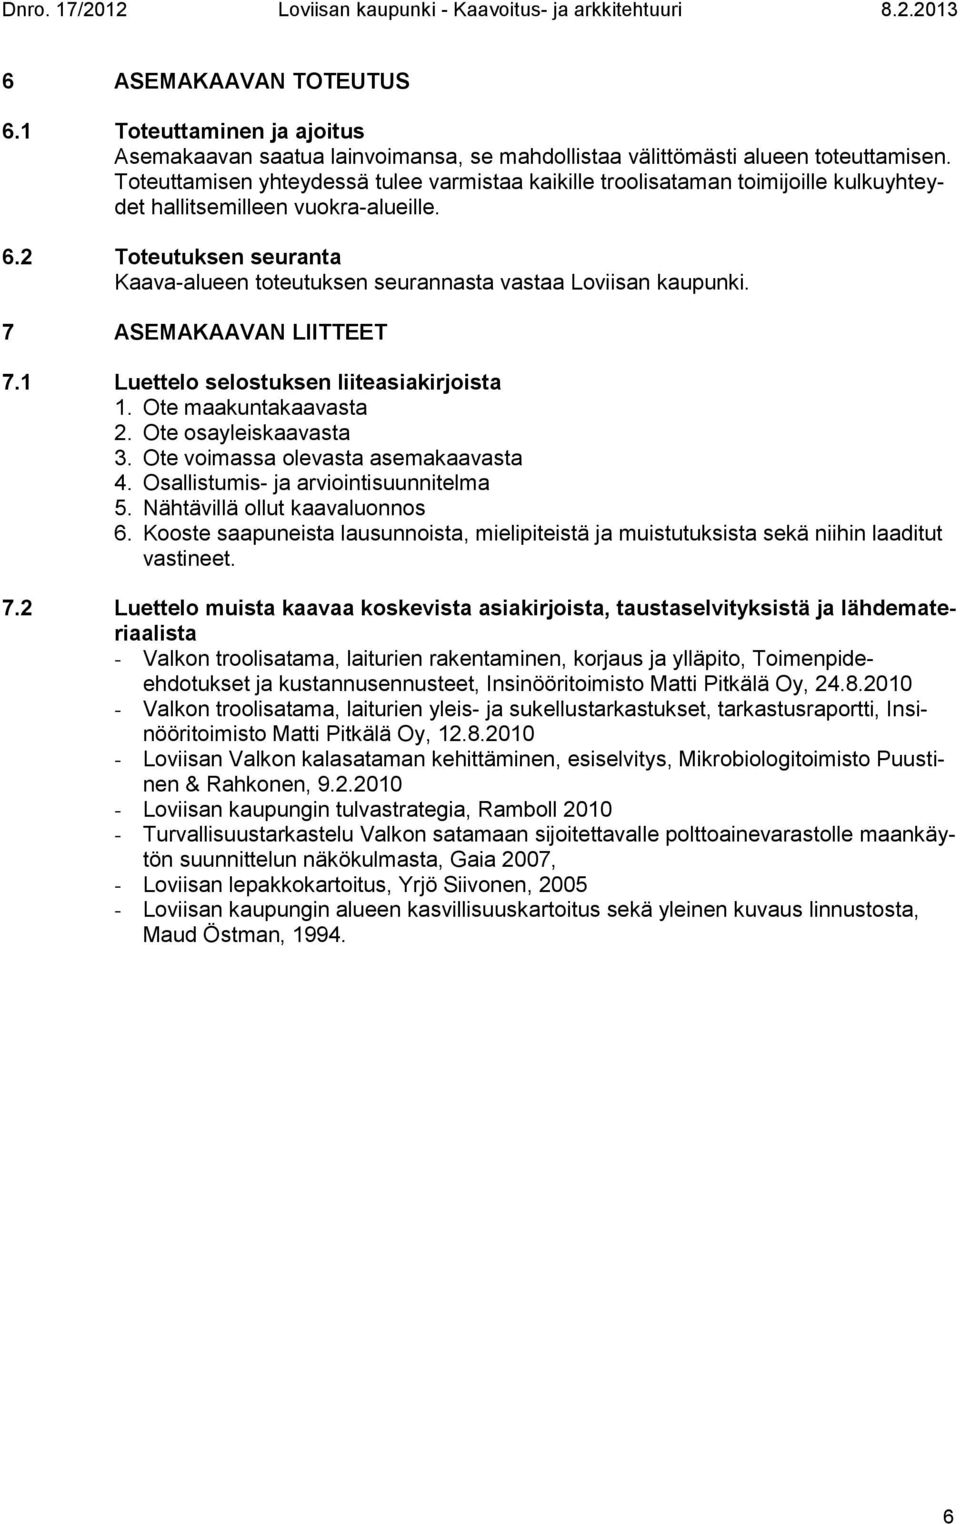 2 Toteutuksen seuranta Kaava-alueen toteutuksen seurannasta vastaa Loviisan kaupunki. 7 ASEMAKAAVAN LIITTEET 7.1 Luettelo selostuksen liiteasiakirjoista 1. Ote maakuntakaavasta 2.